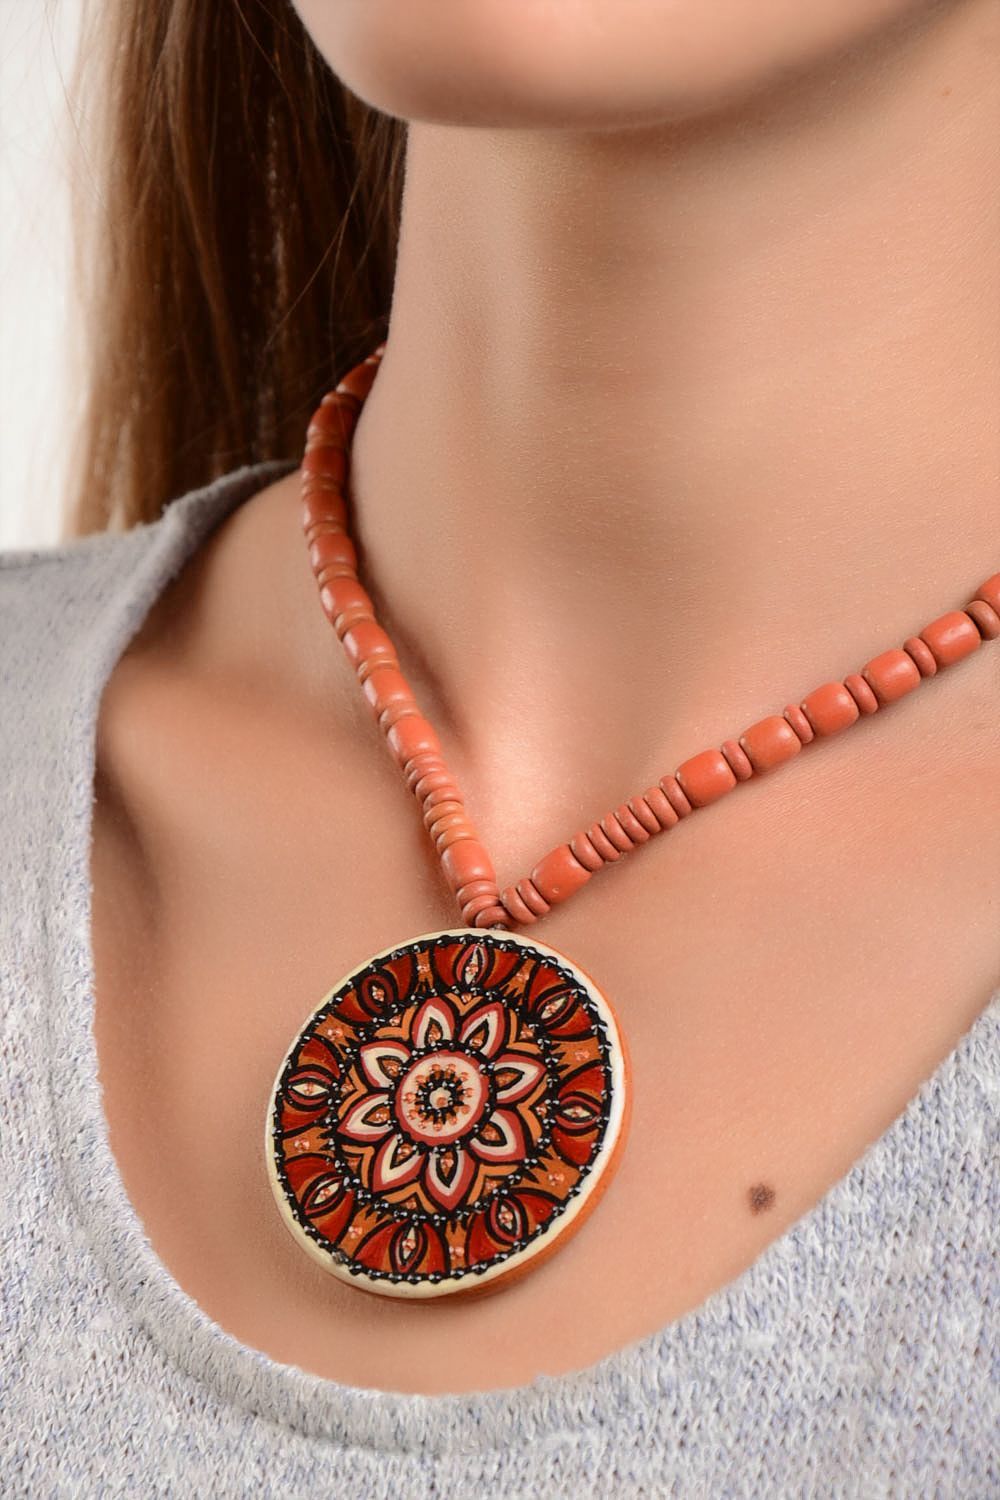 Handmade necklace ceramic jewelry pendant necklace ethnic jewellery photo 1